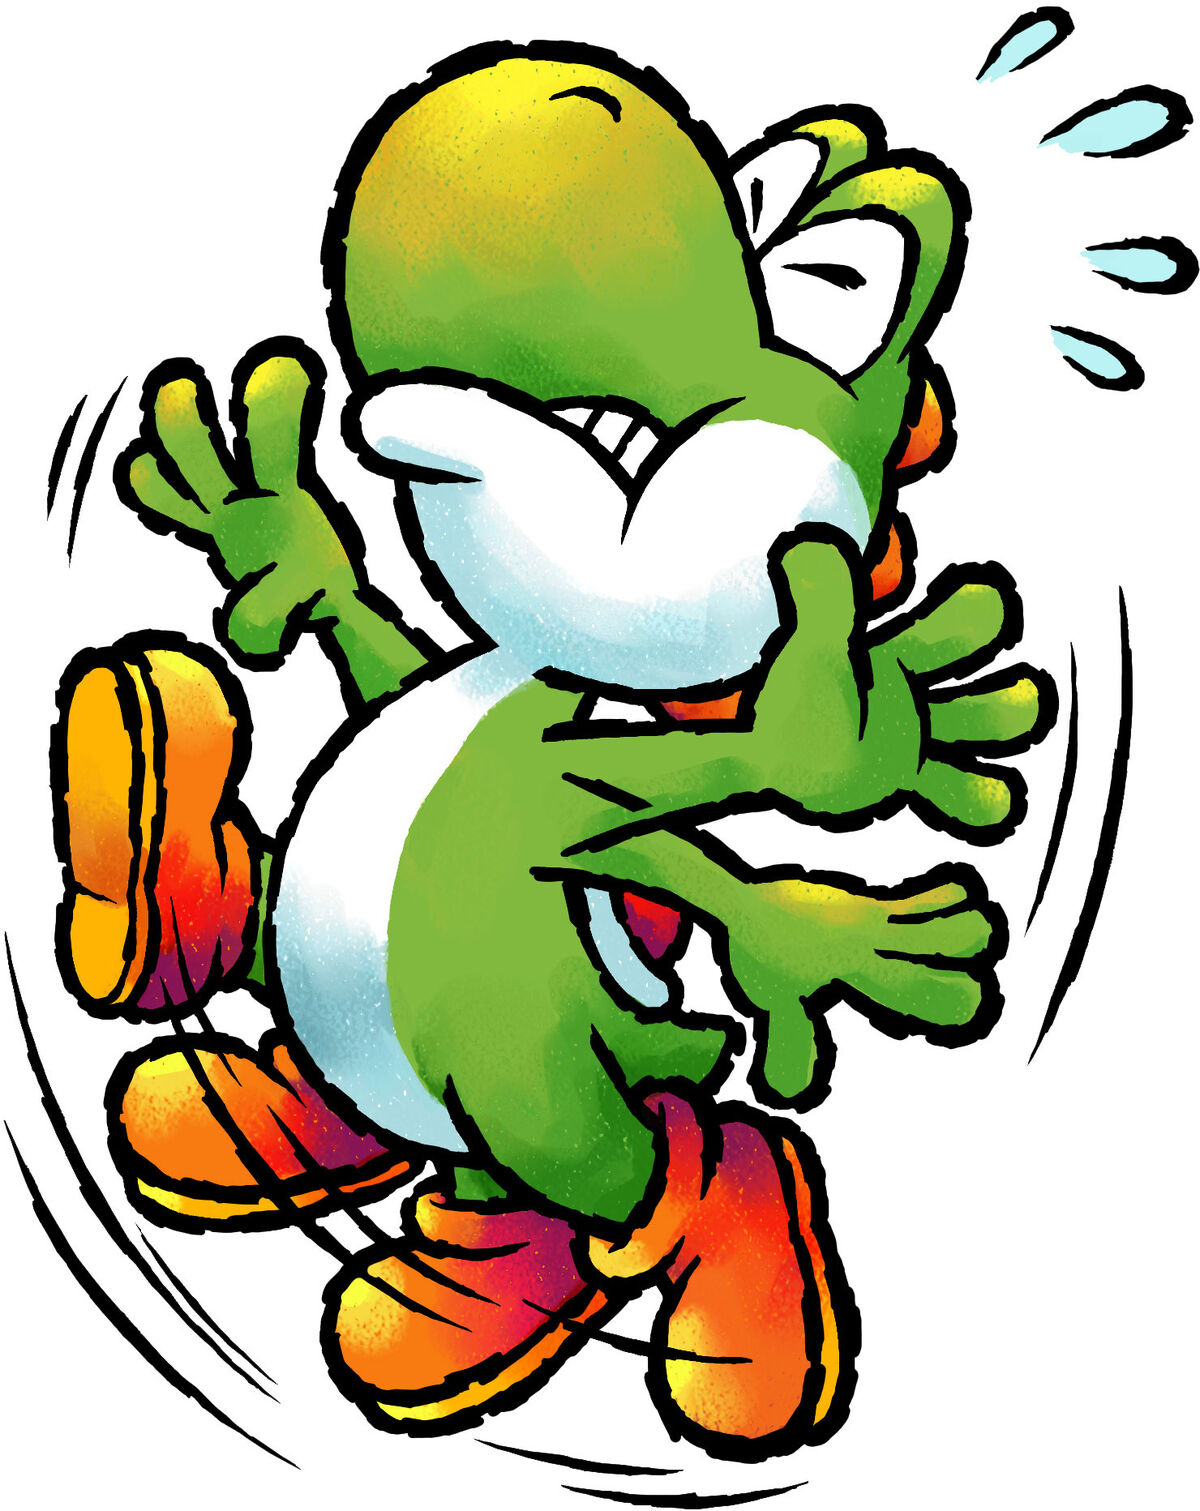 swfchan: Mario & Platformer - Doodle Jump Online.swf